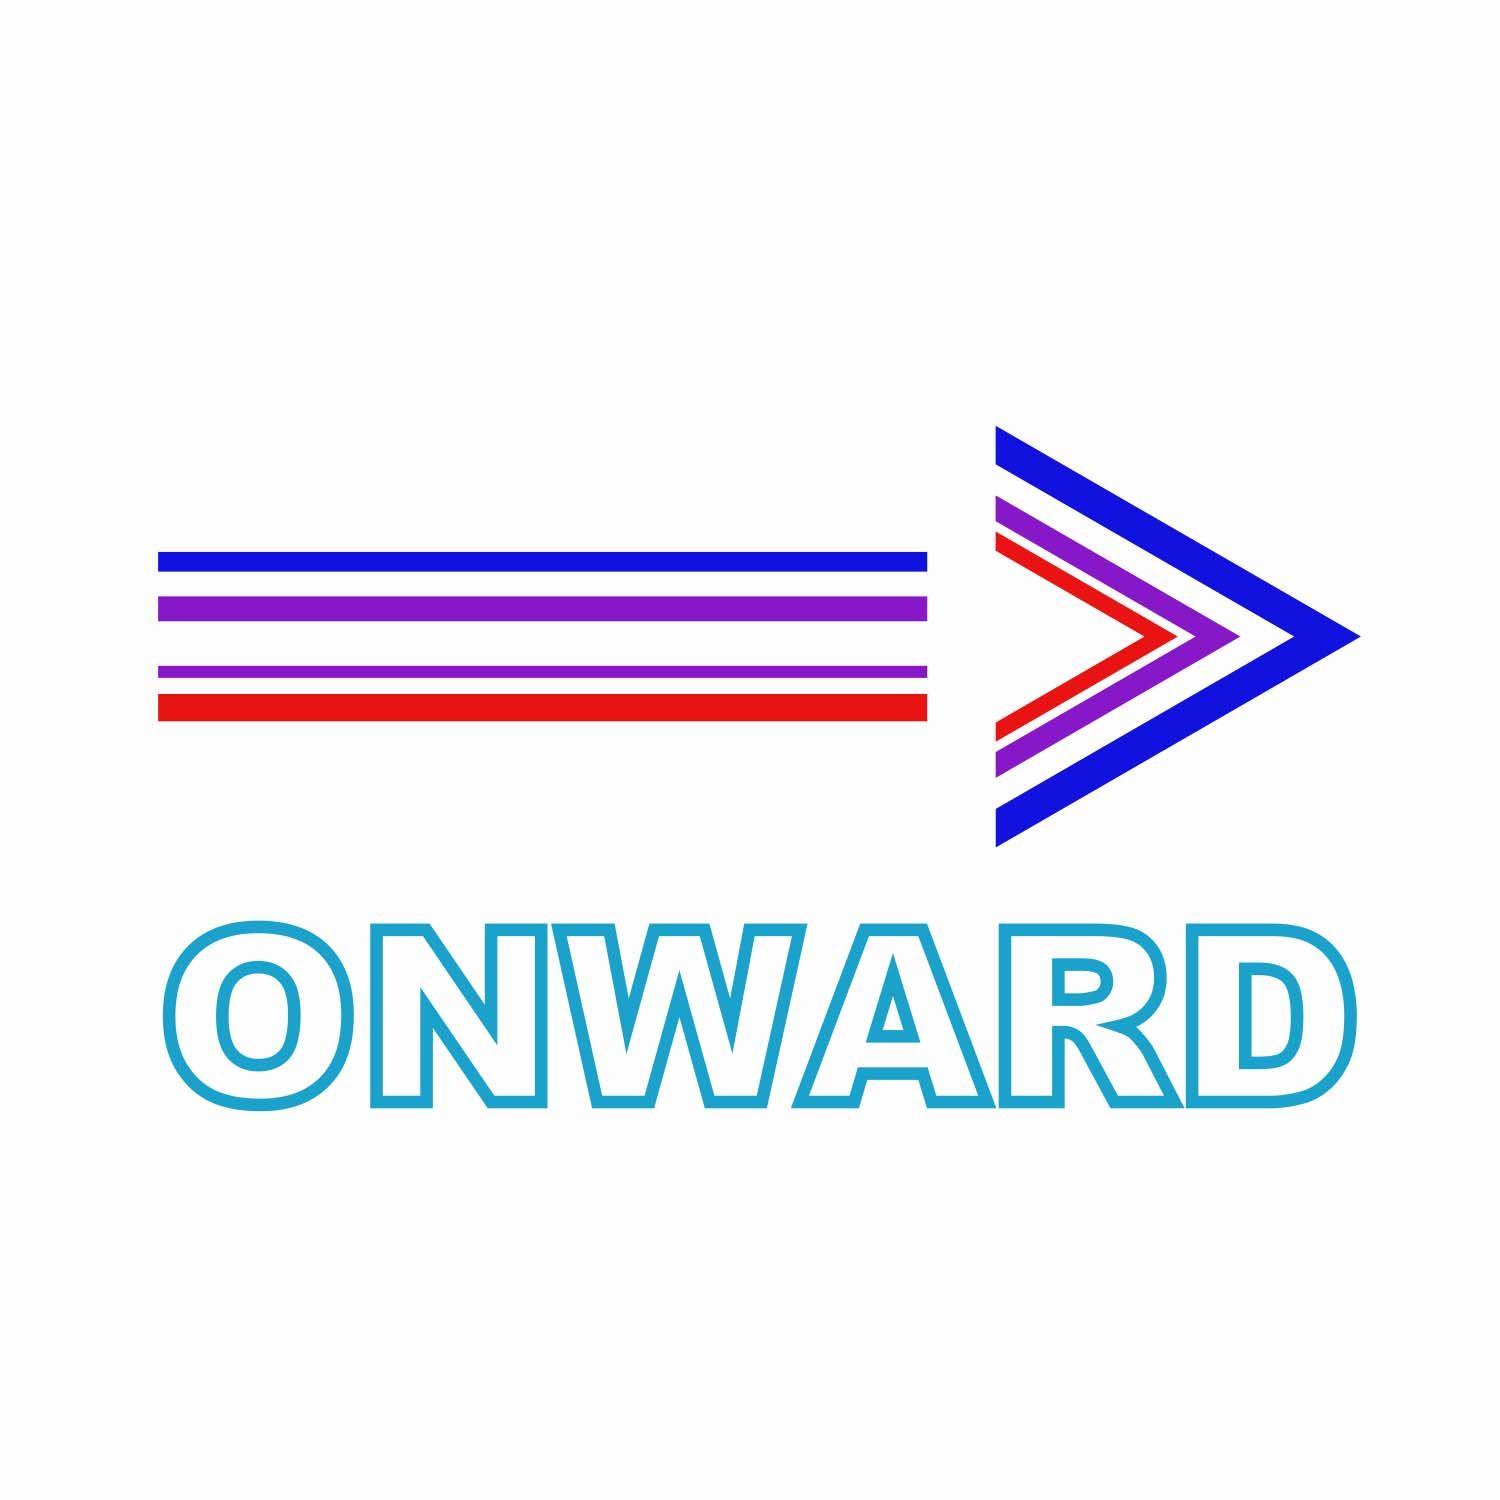 Onward Logo - Onward Logo Made with Adobe Illustrator CC 2018. Logos